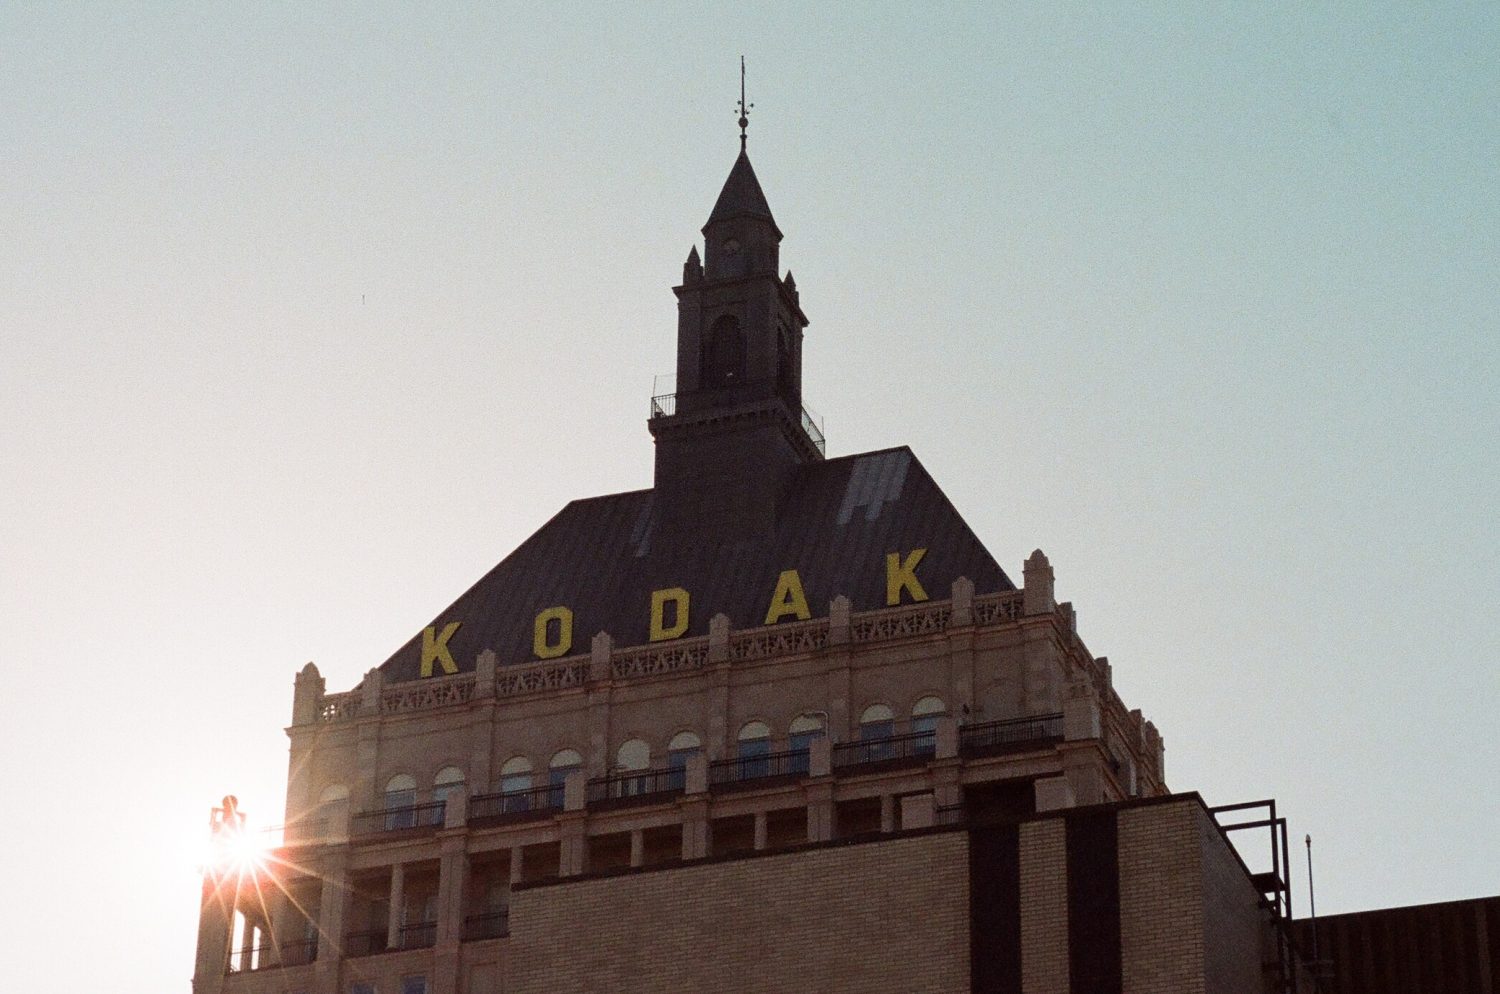 Kodak Tower